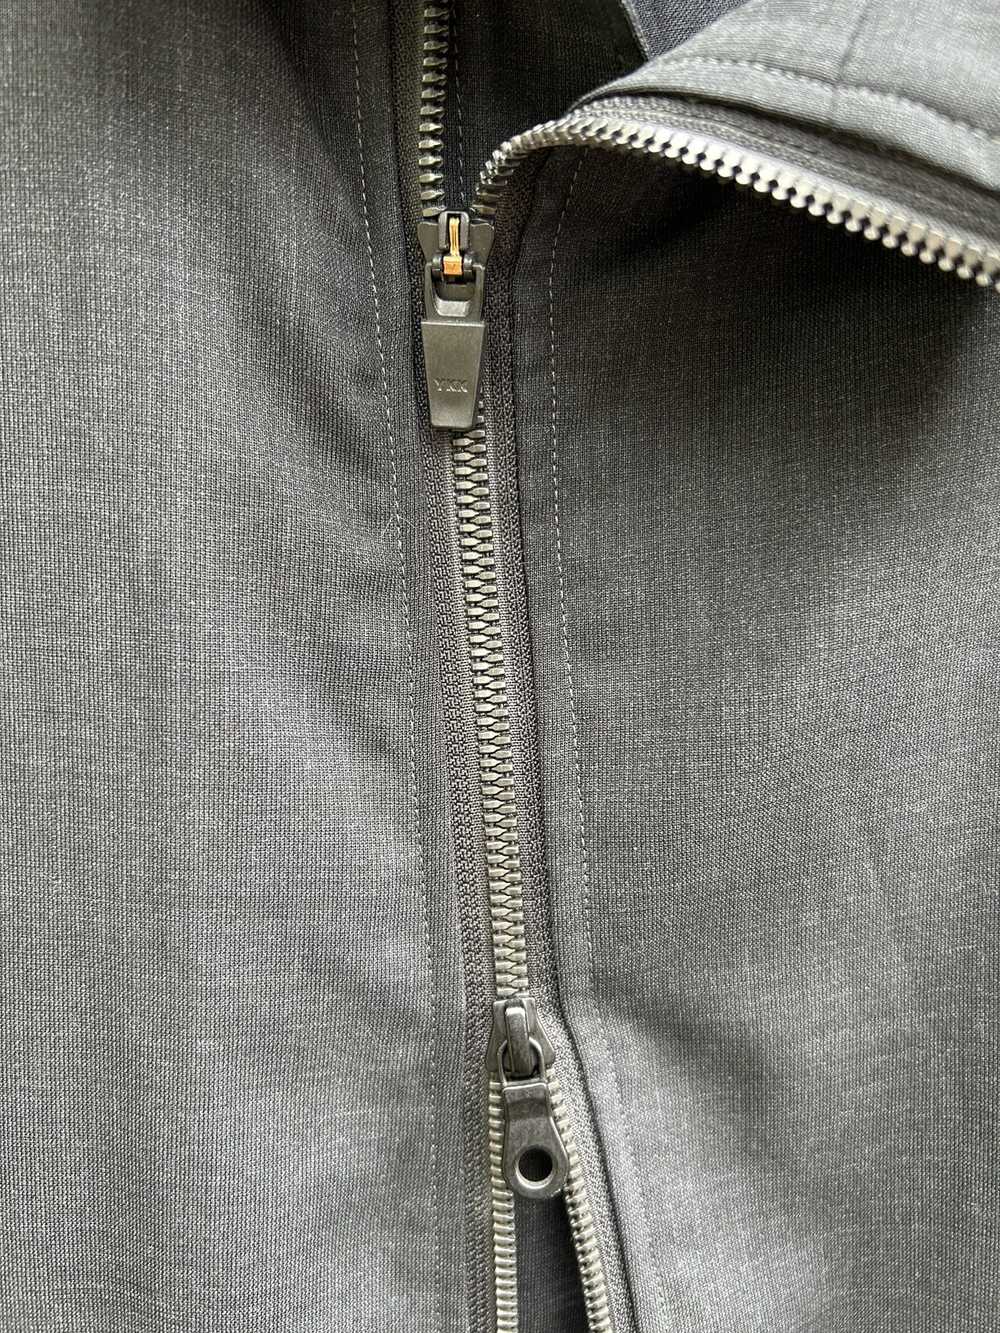 Rip Van Winkle Japan Asymmetric 2-way zip wool sh… - image 5